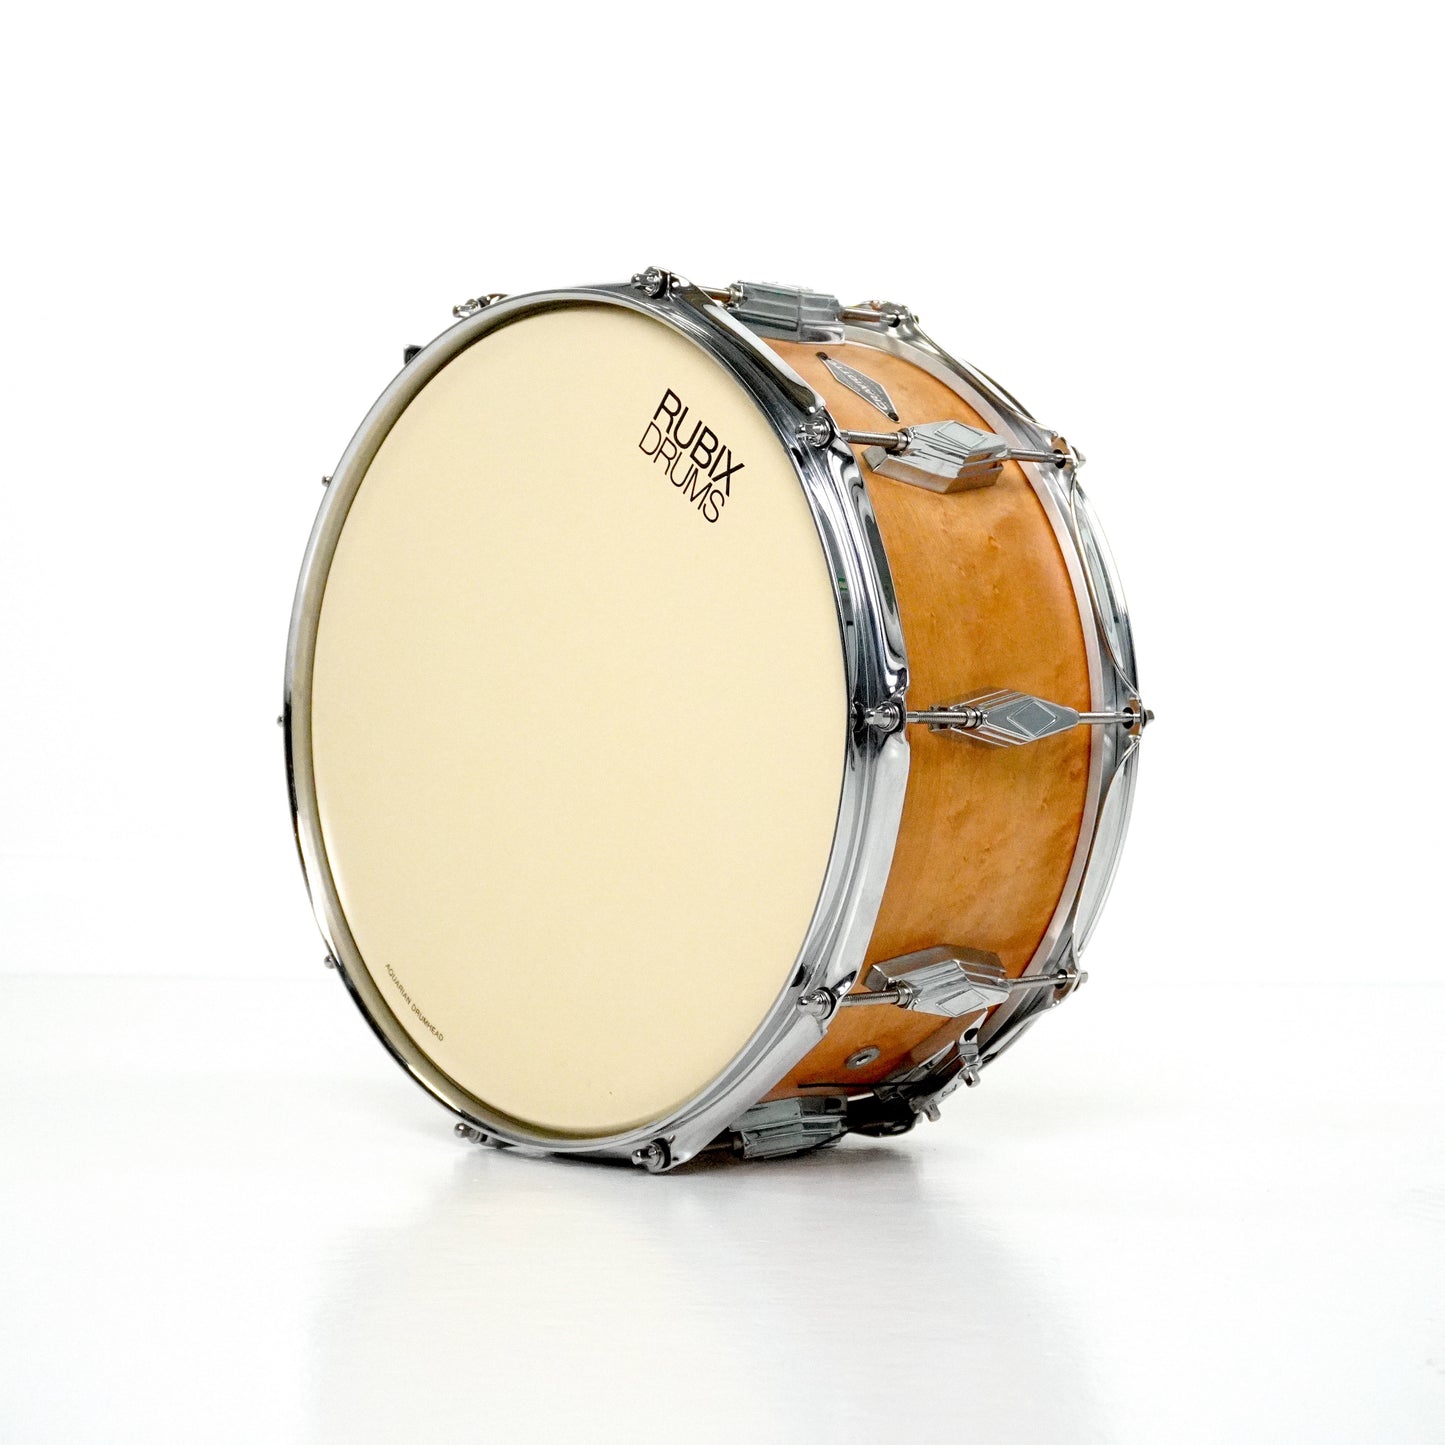 Craviotto 14” x 6” Maple Snare Drum